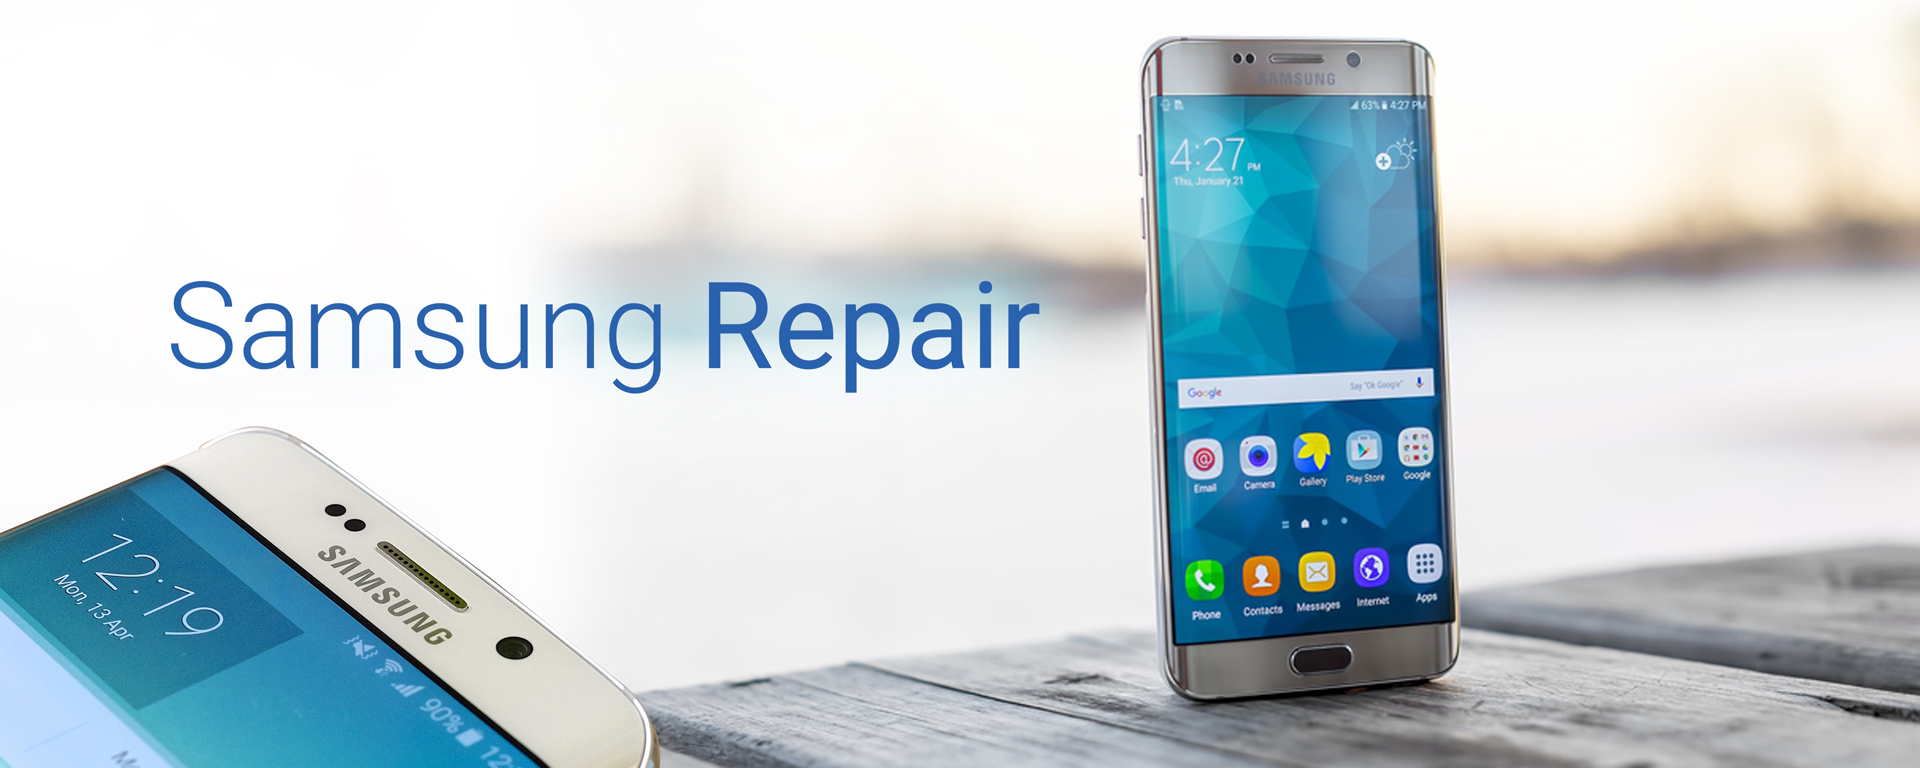 Samsung-Galaxy-Repair-Banner.jpg